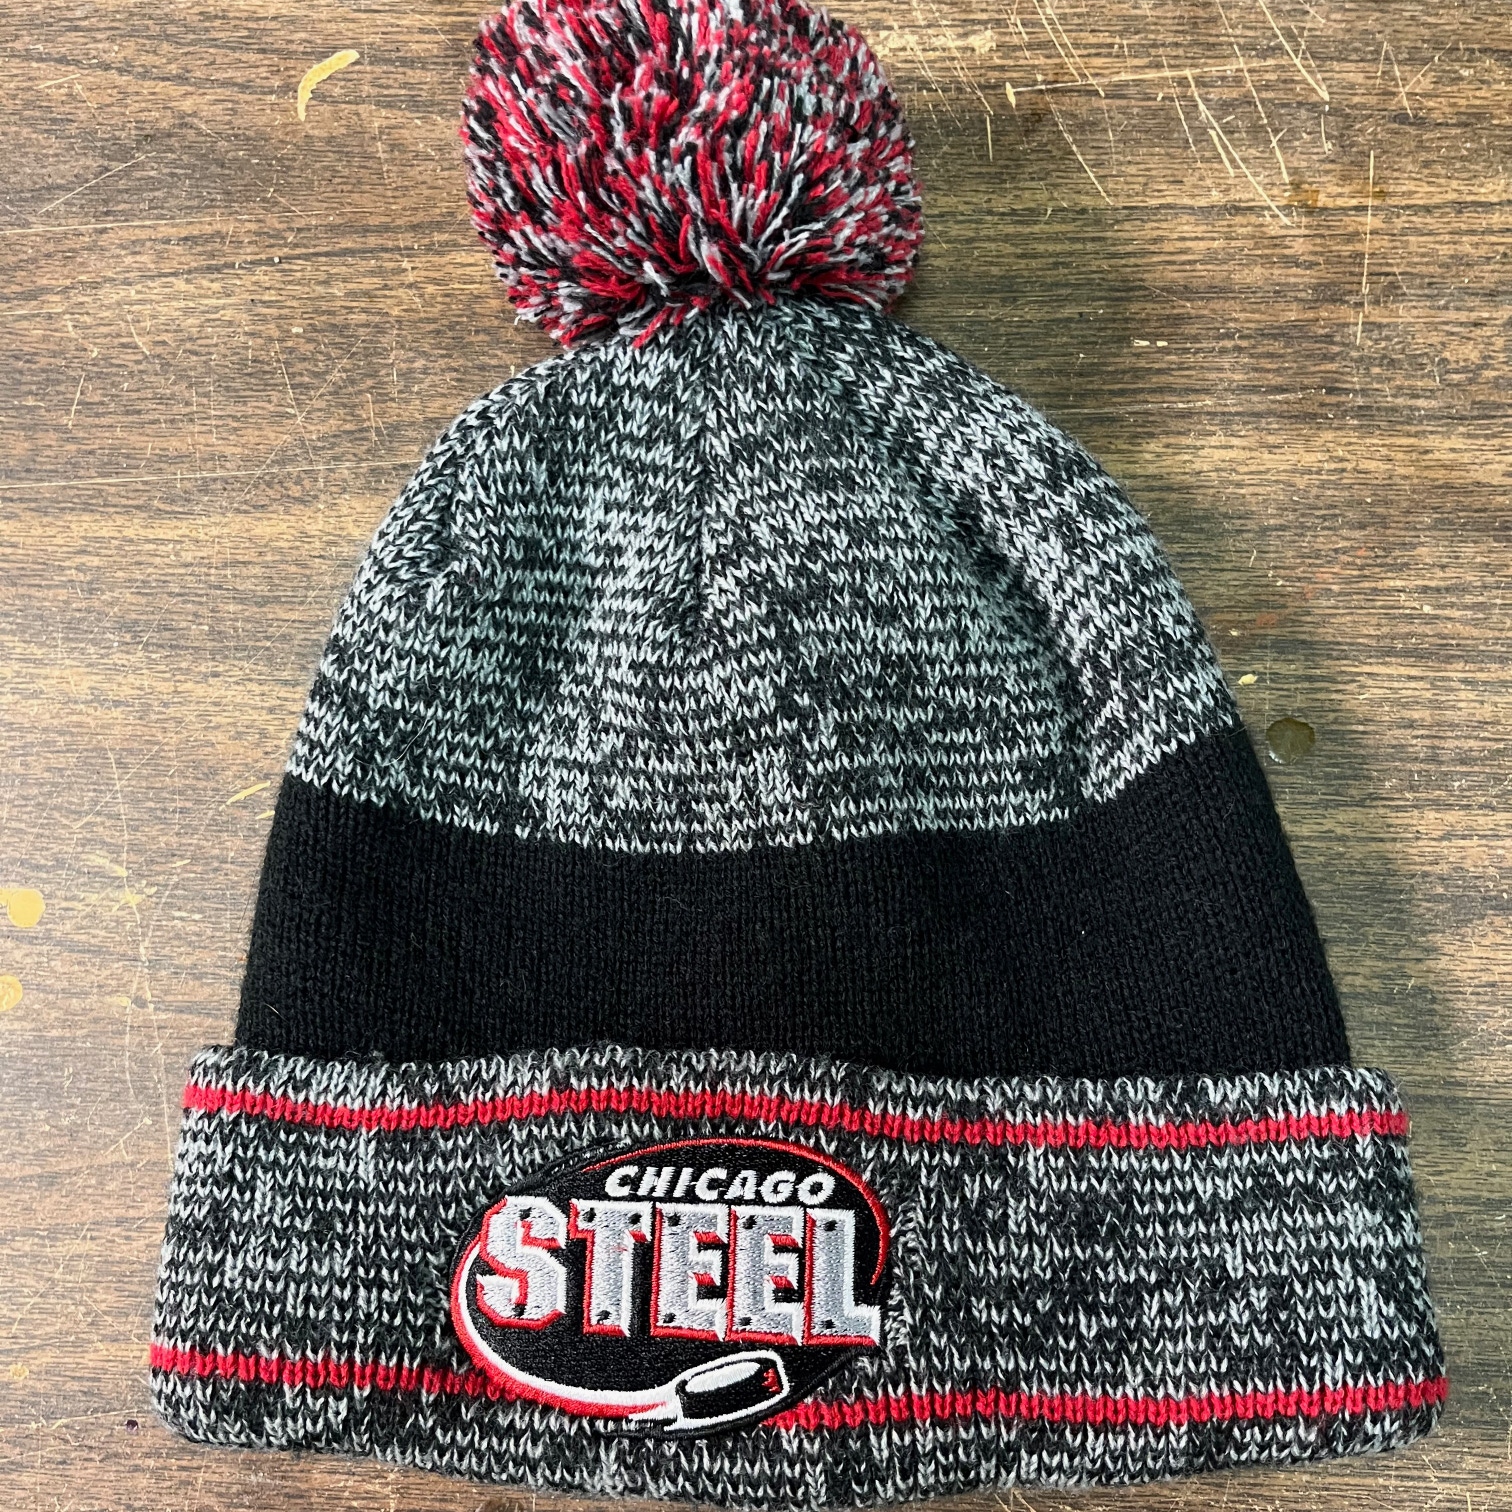 Chicago Steel Team Hat